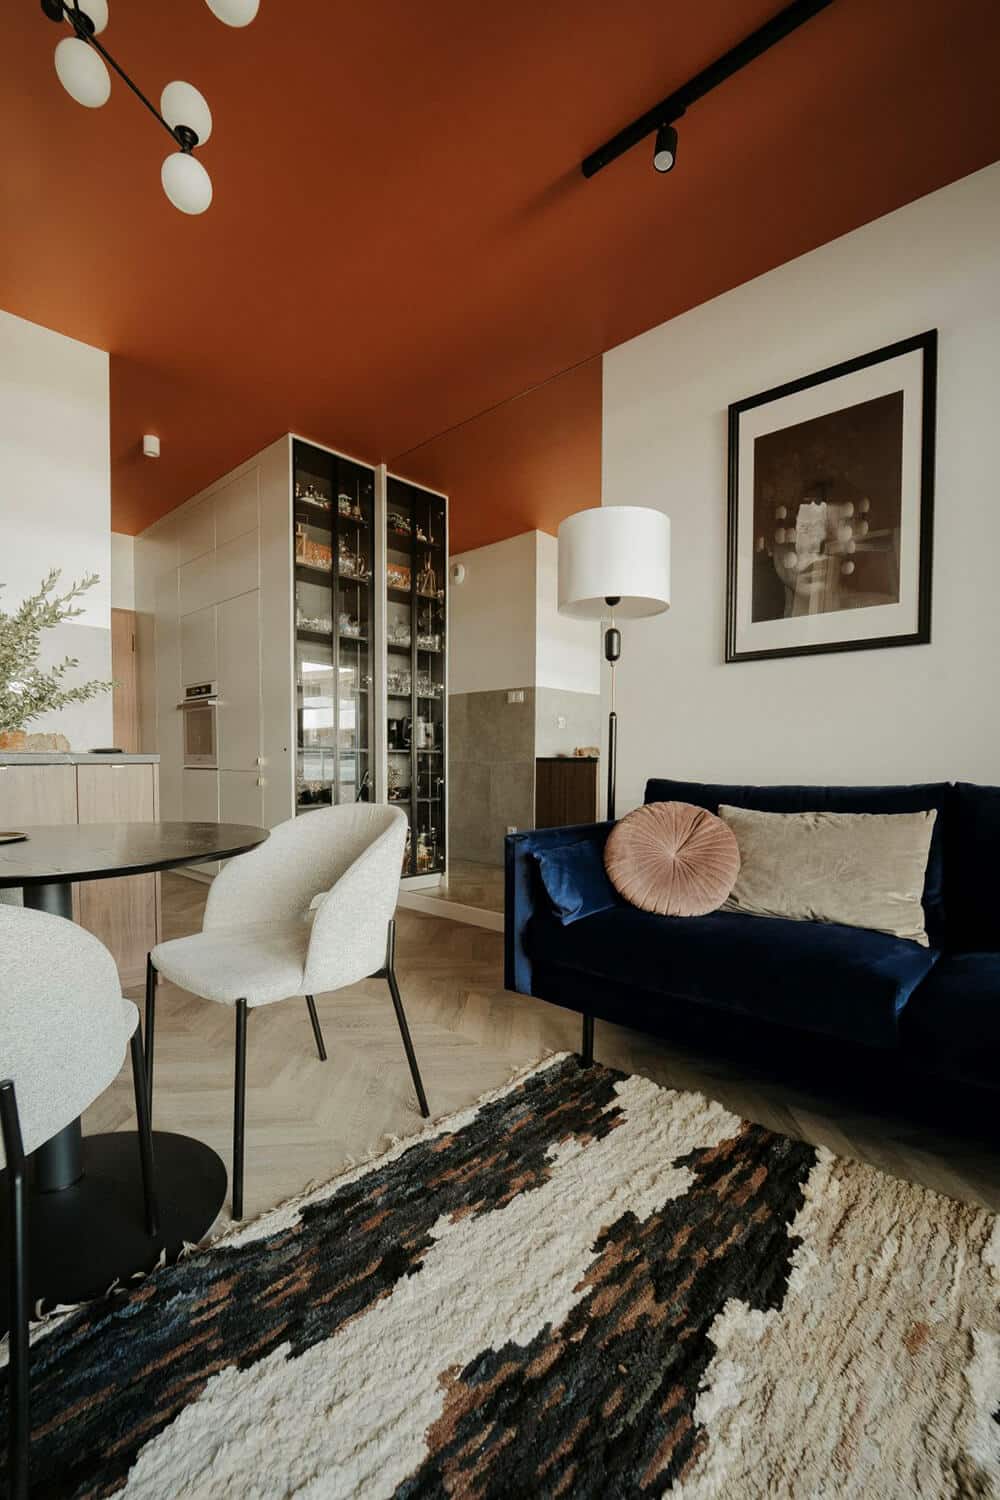 Nowy początek pod rudym niebem – małe mieszkanie pełne niecodziennych rozwiązań projektu Czeczko Design Studio